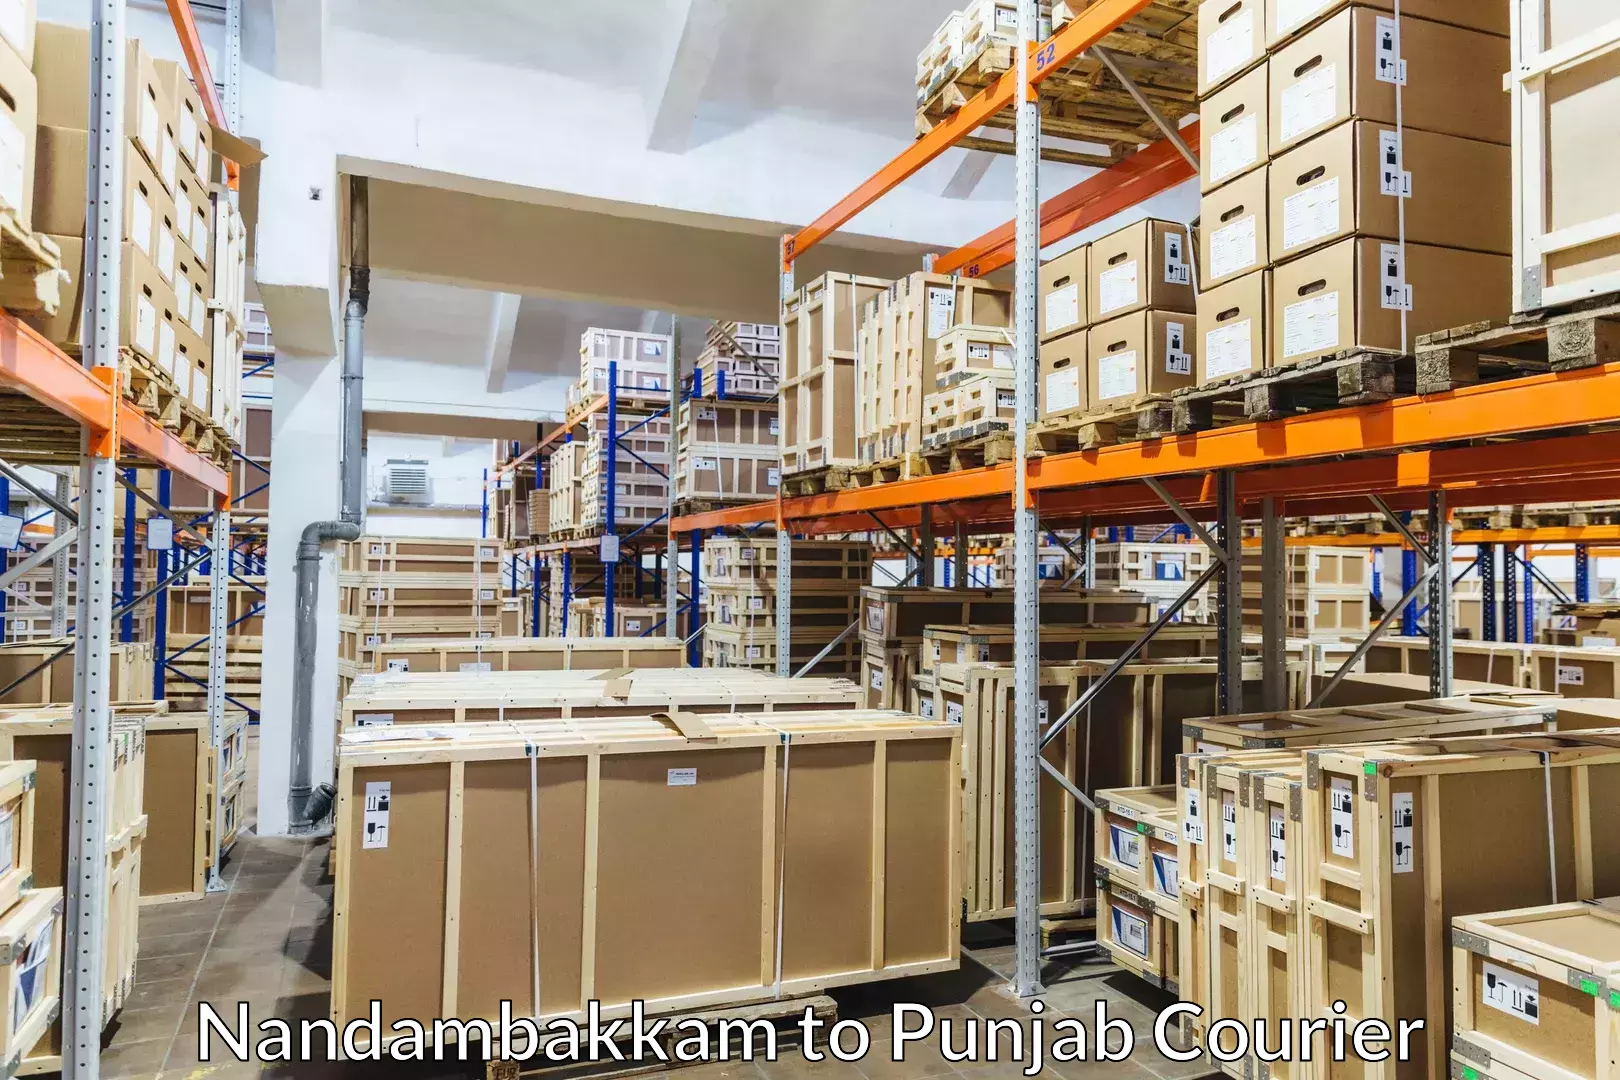 Luggage transport solutions Nandambakkam to Central University of Punjab Bathinda